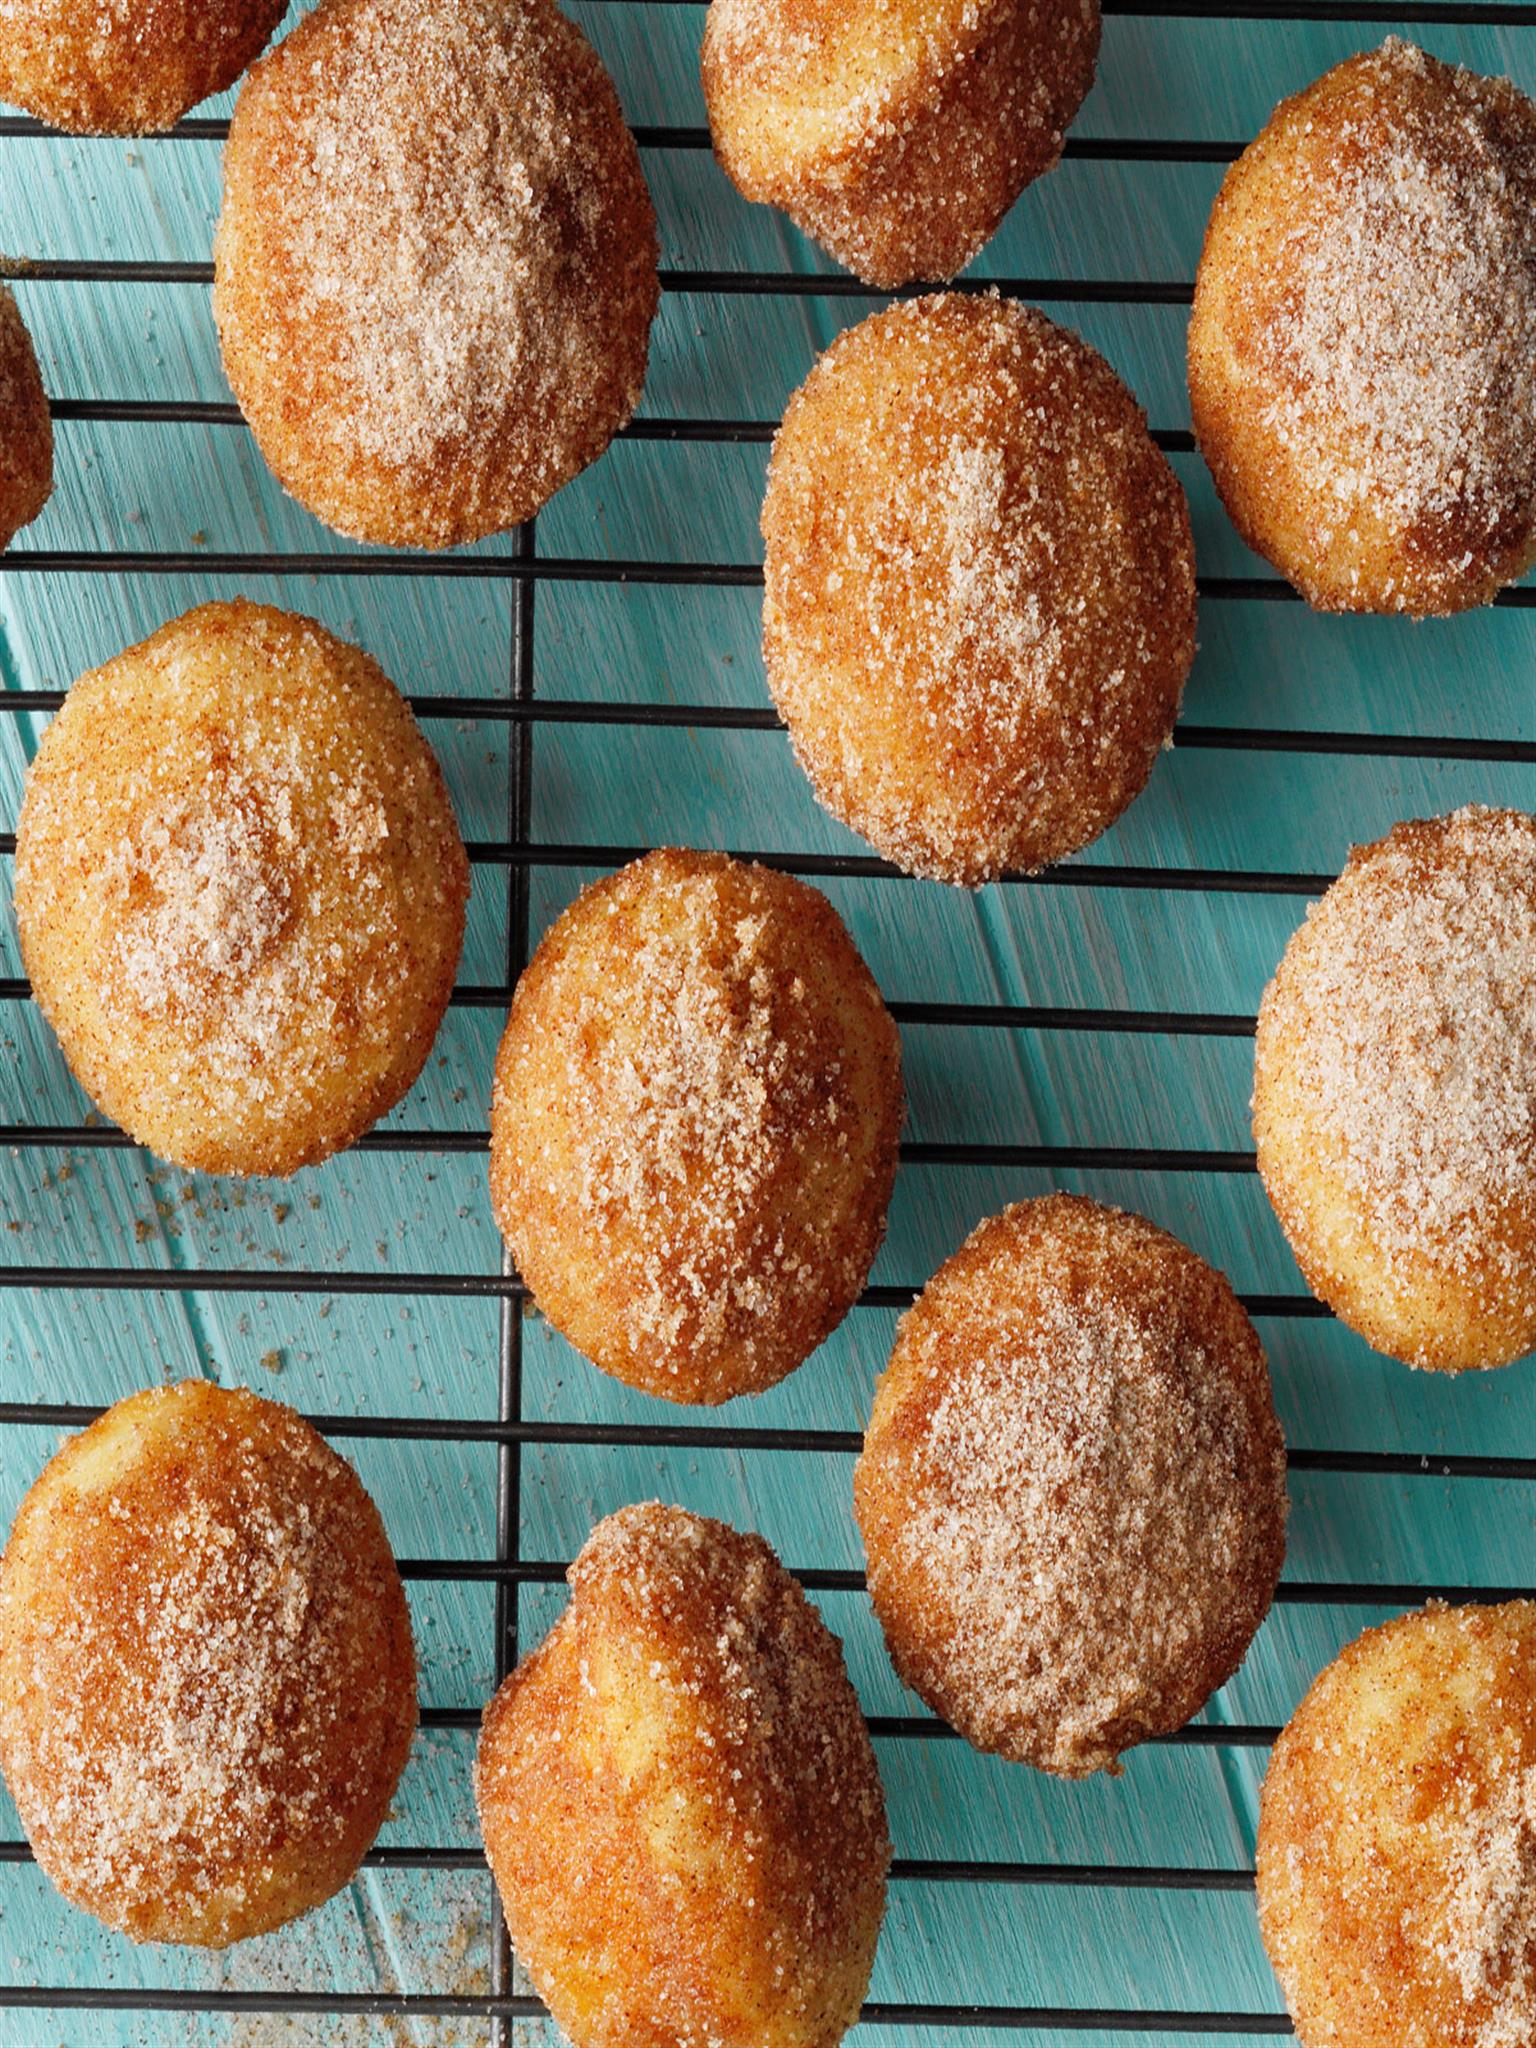 Cinnamon-Sugar Muffins Recipe: to Make It